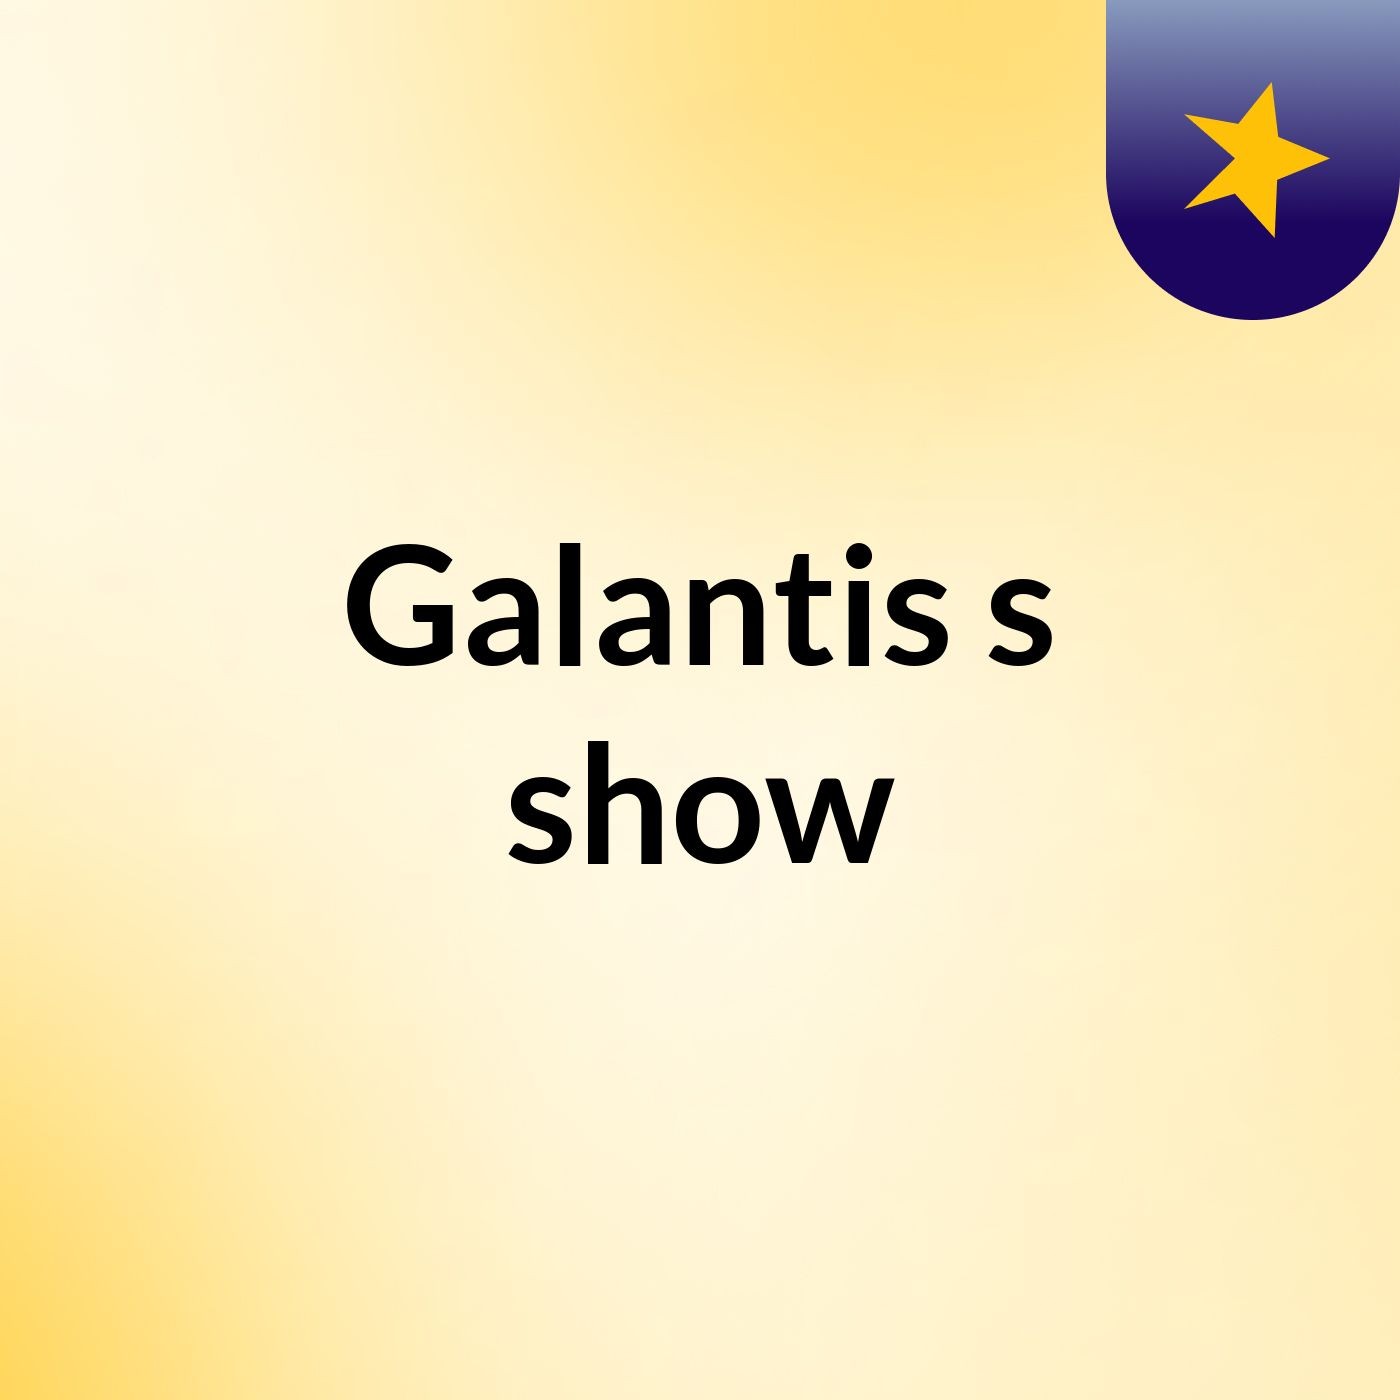 Galantis's show